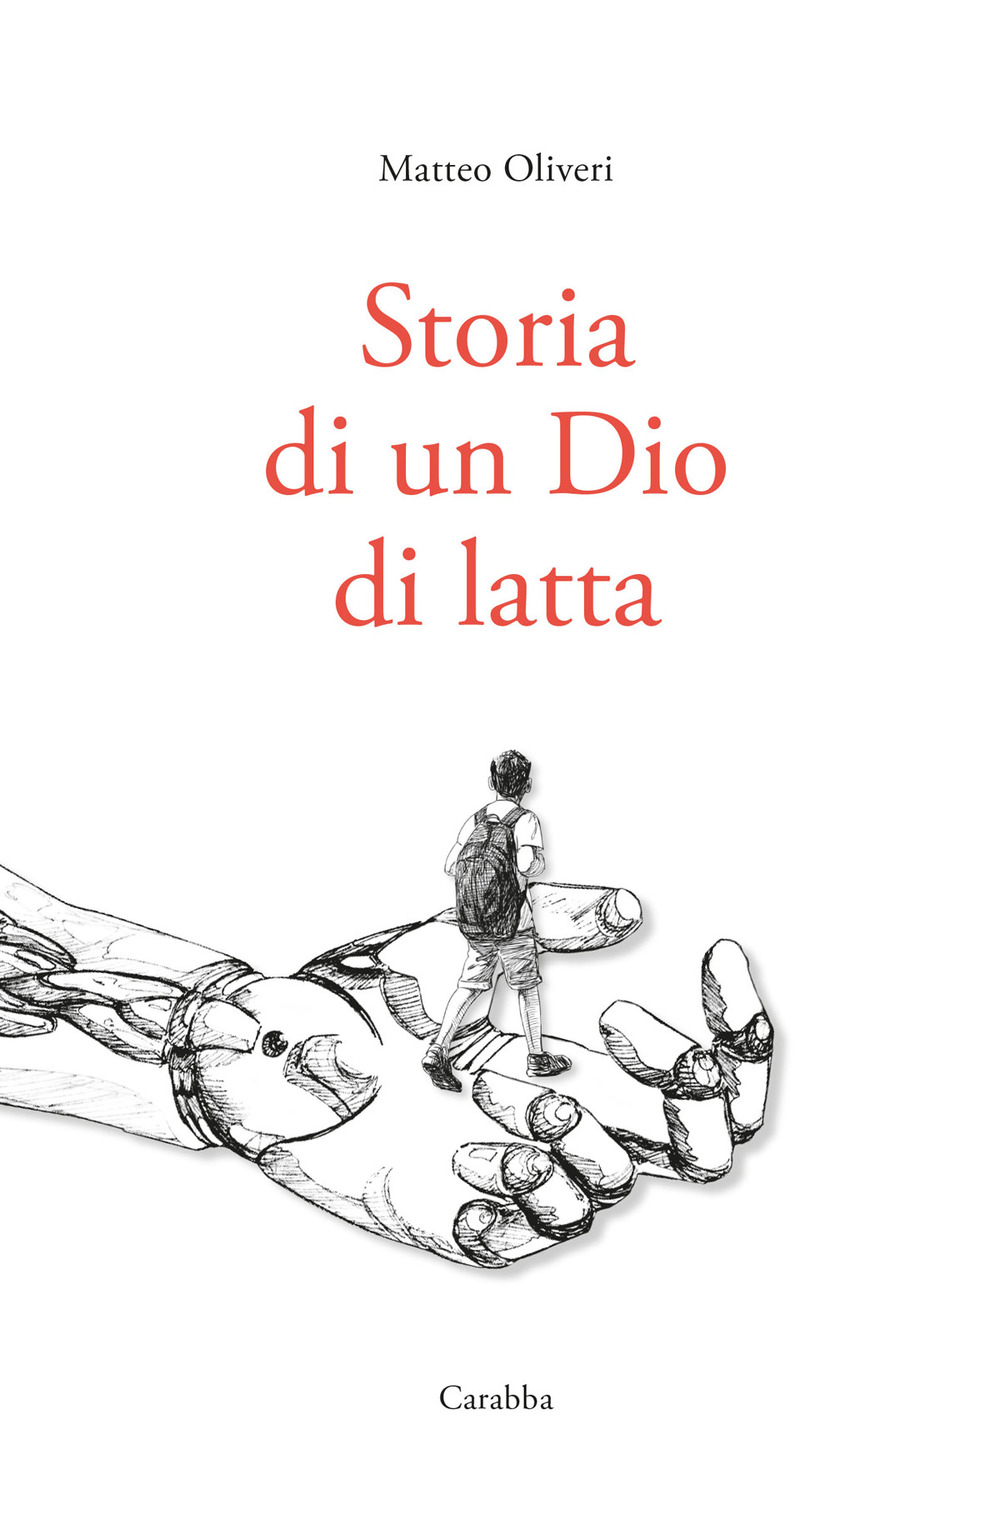 Libri Matteo Oliveri - Storia Di Un Dio Di Latta NUOVO SIGILLATO, EDIZIONE DEL 21/04/2021 SUBITO DISPONIBILE